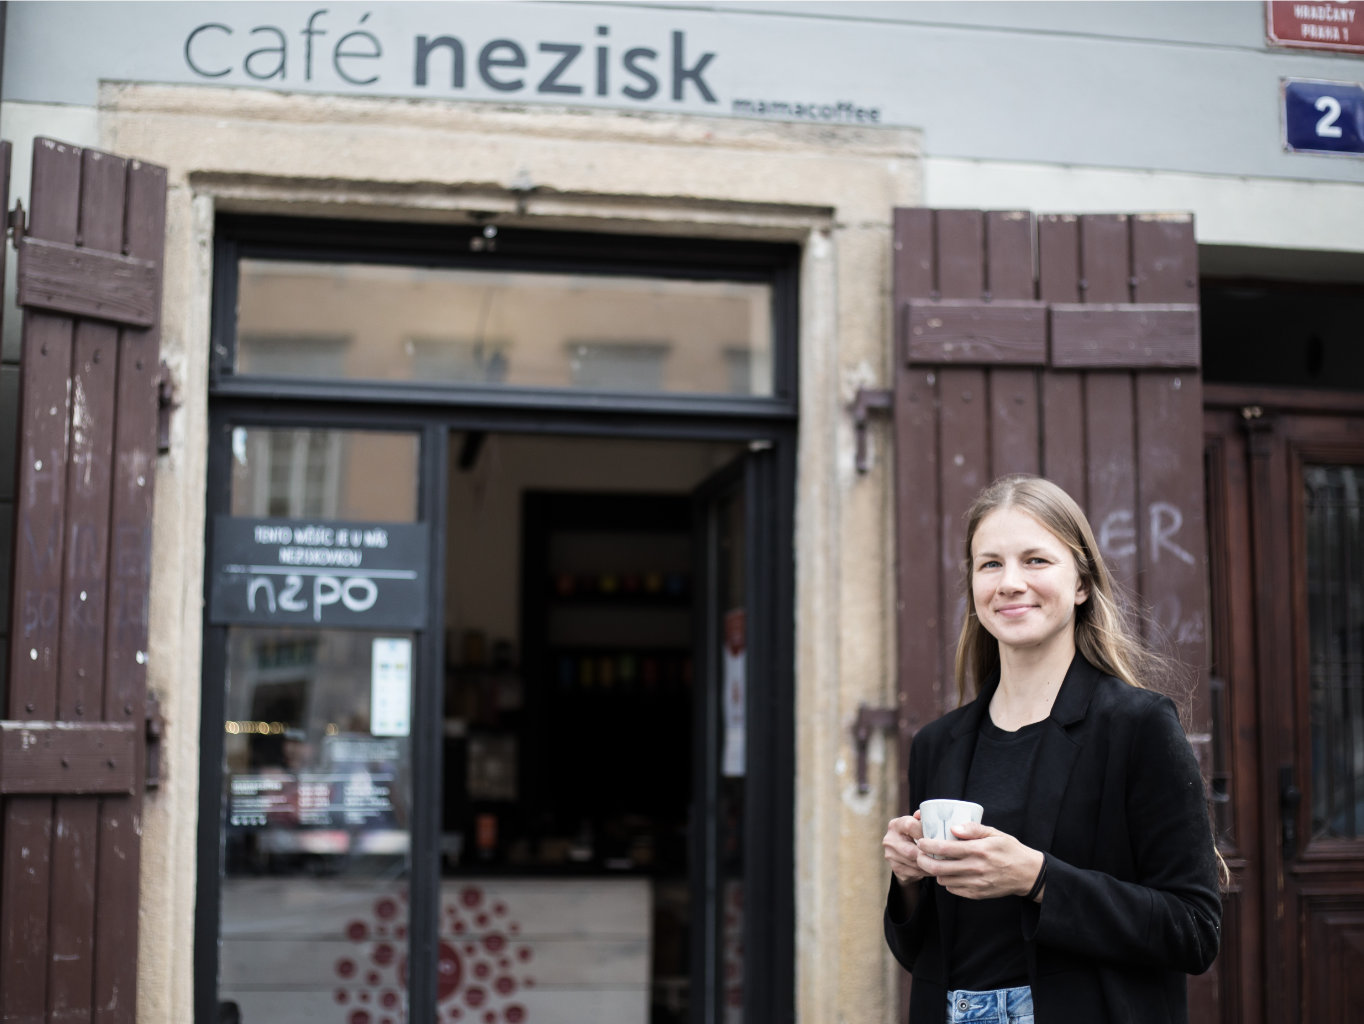 Zuzana Palková, manager of Café Nezisk